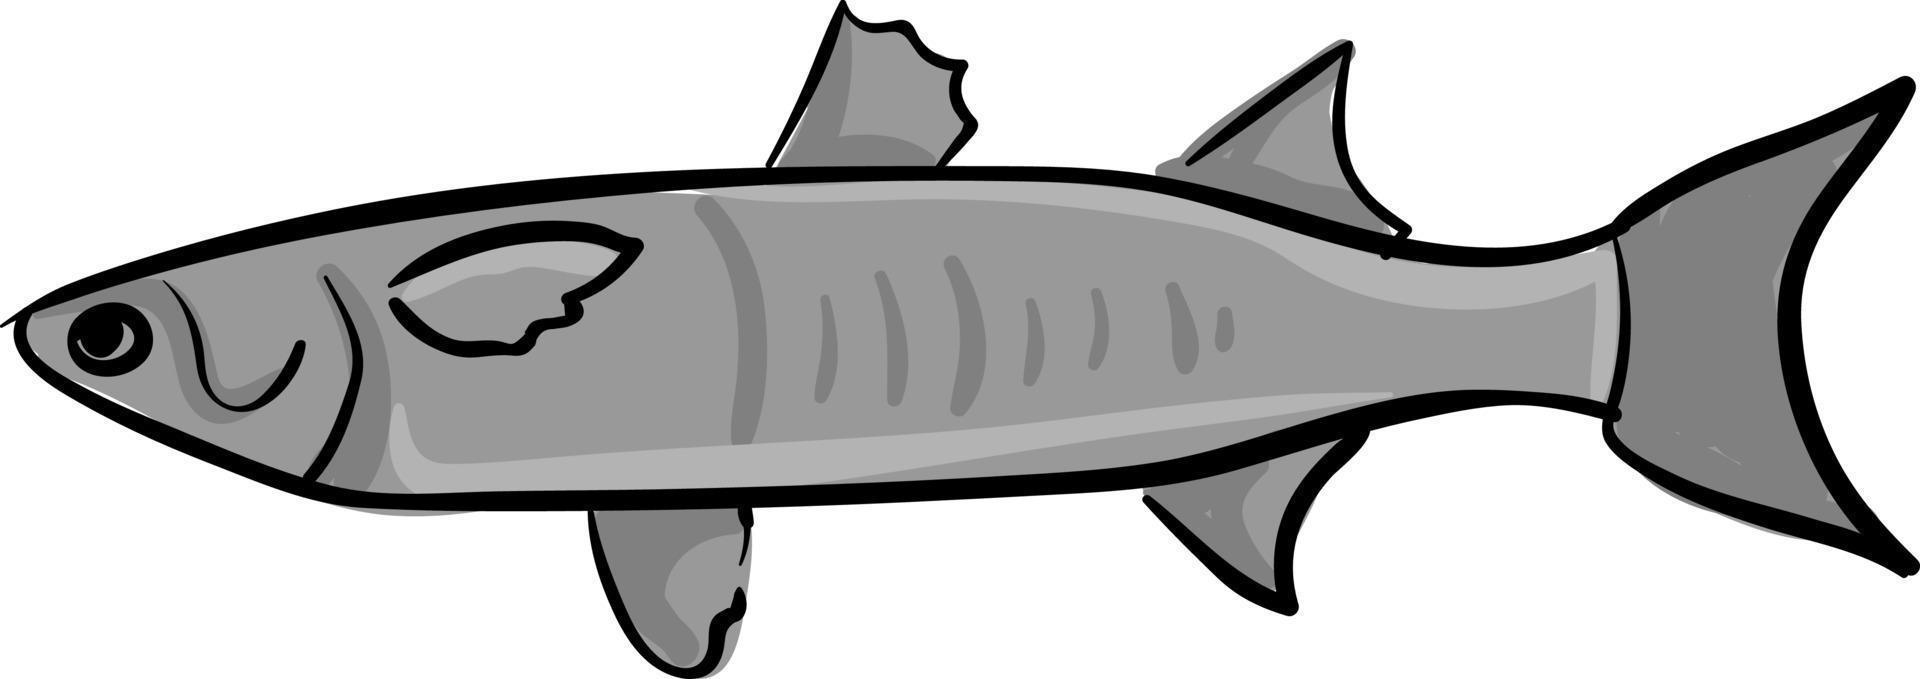 Meeräsche Fisch, Illustration, Vektor auf weißem Hintergrund.